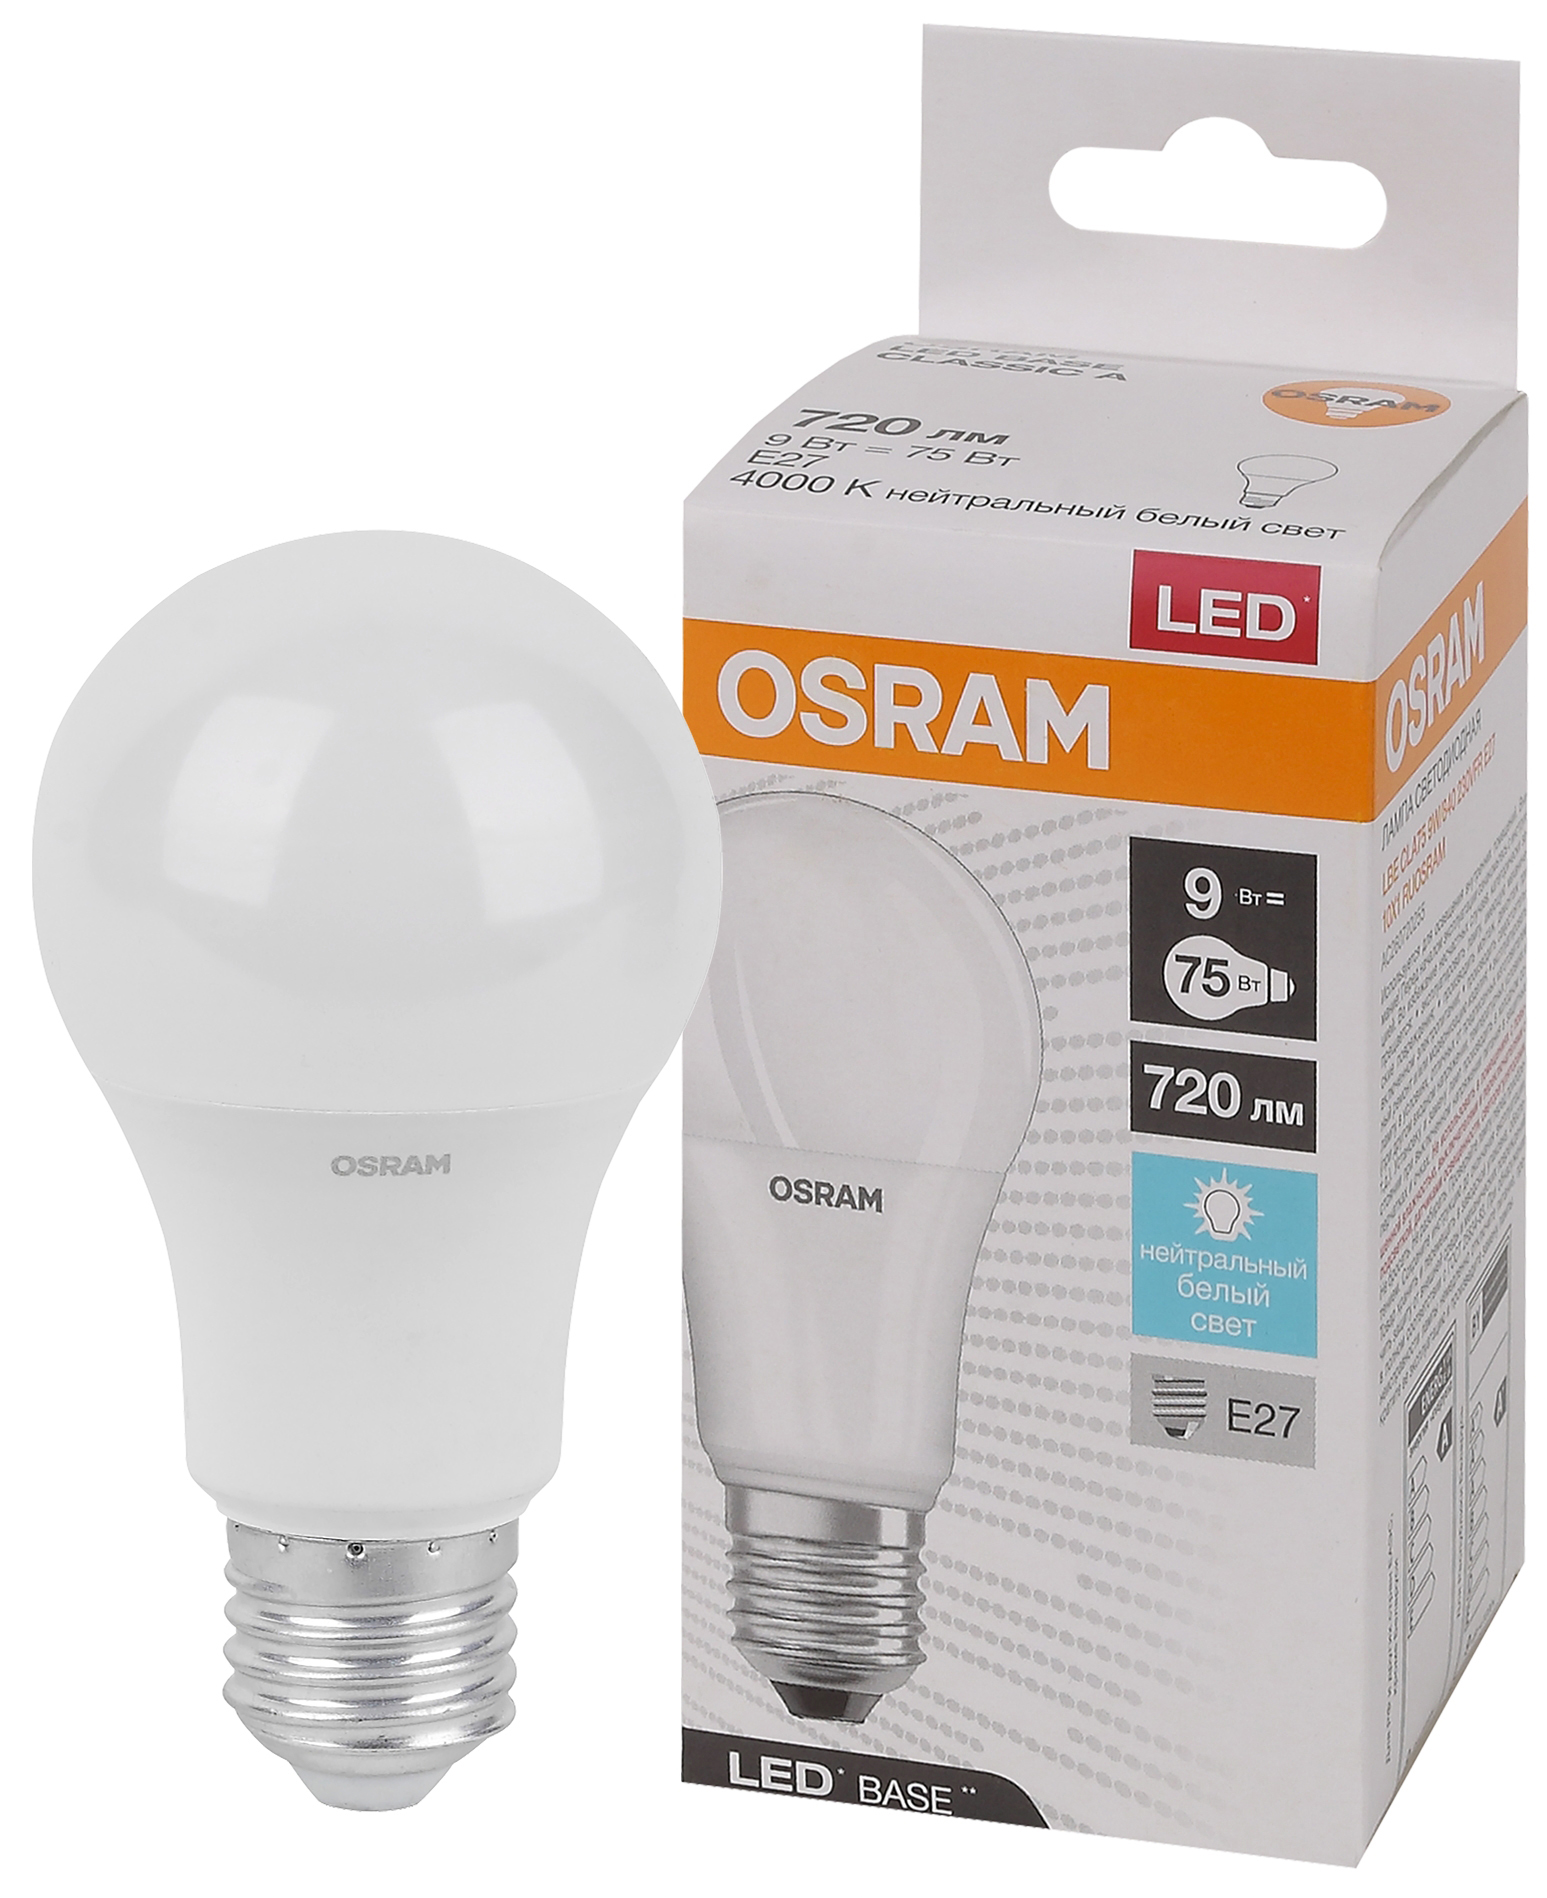 Лампочка светодиодная Osram LEDBASE Led A75 9Вт 4000К Е27 / E27 груша матовая нейтральный белый свет